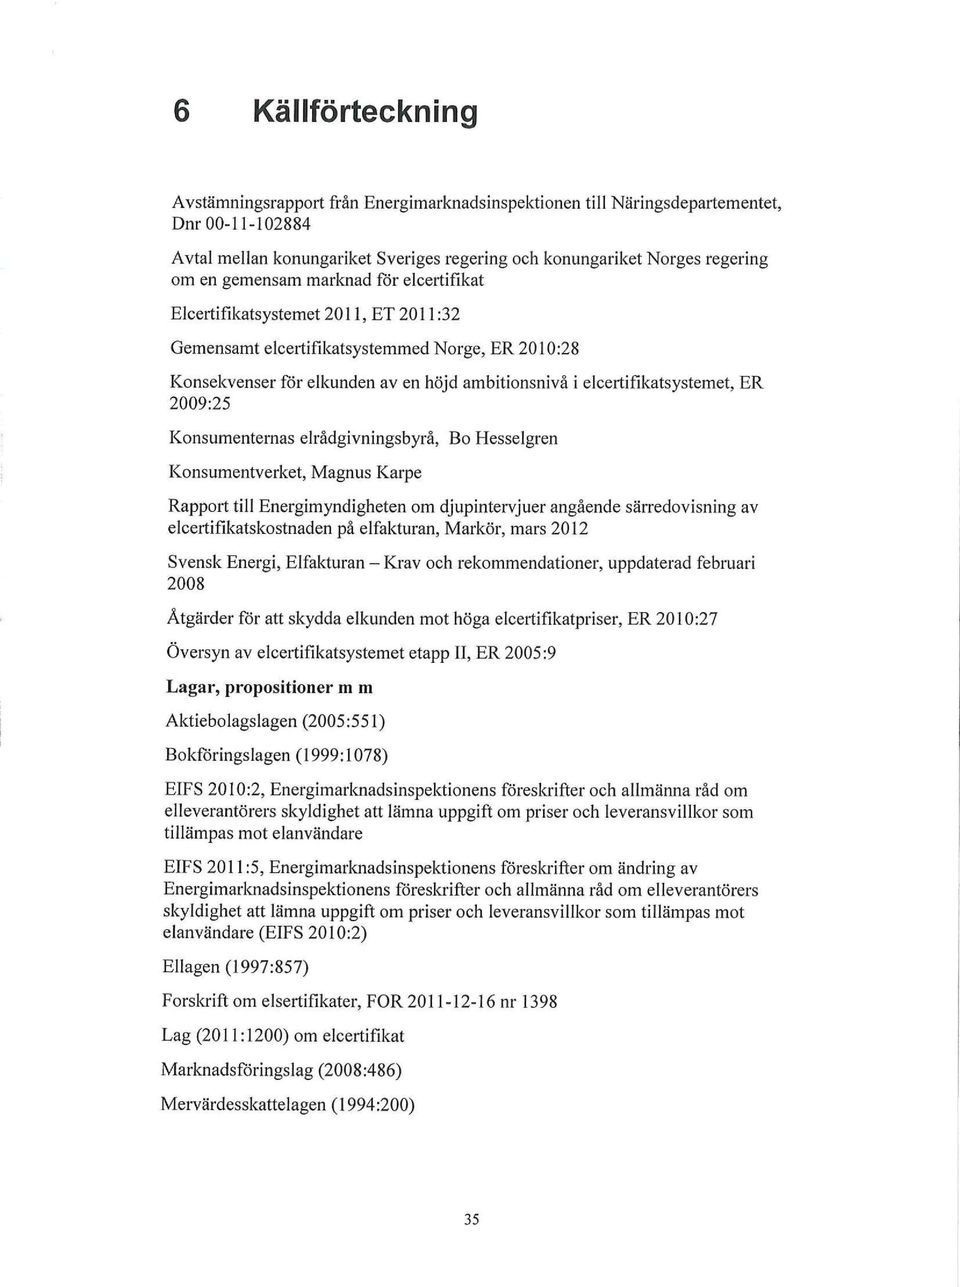 elrådgivningsbyrå, Eokiesselgren Konsumentverket, Magnus Karpe Rapport till Energimyndigketen om djupinteryluer angående särredovisning av eleertiftkatskostnaden på elfakturan, Markör, mars 2012